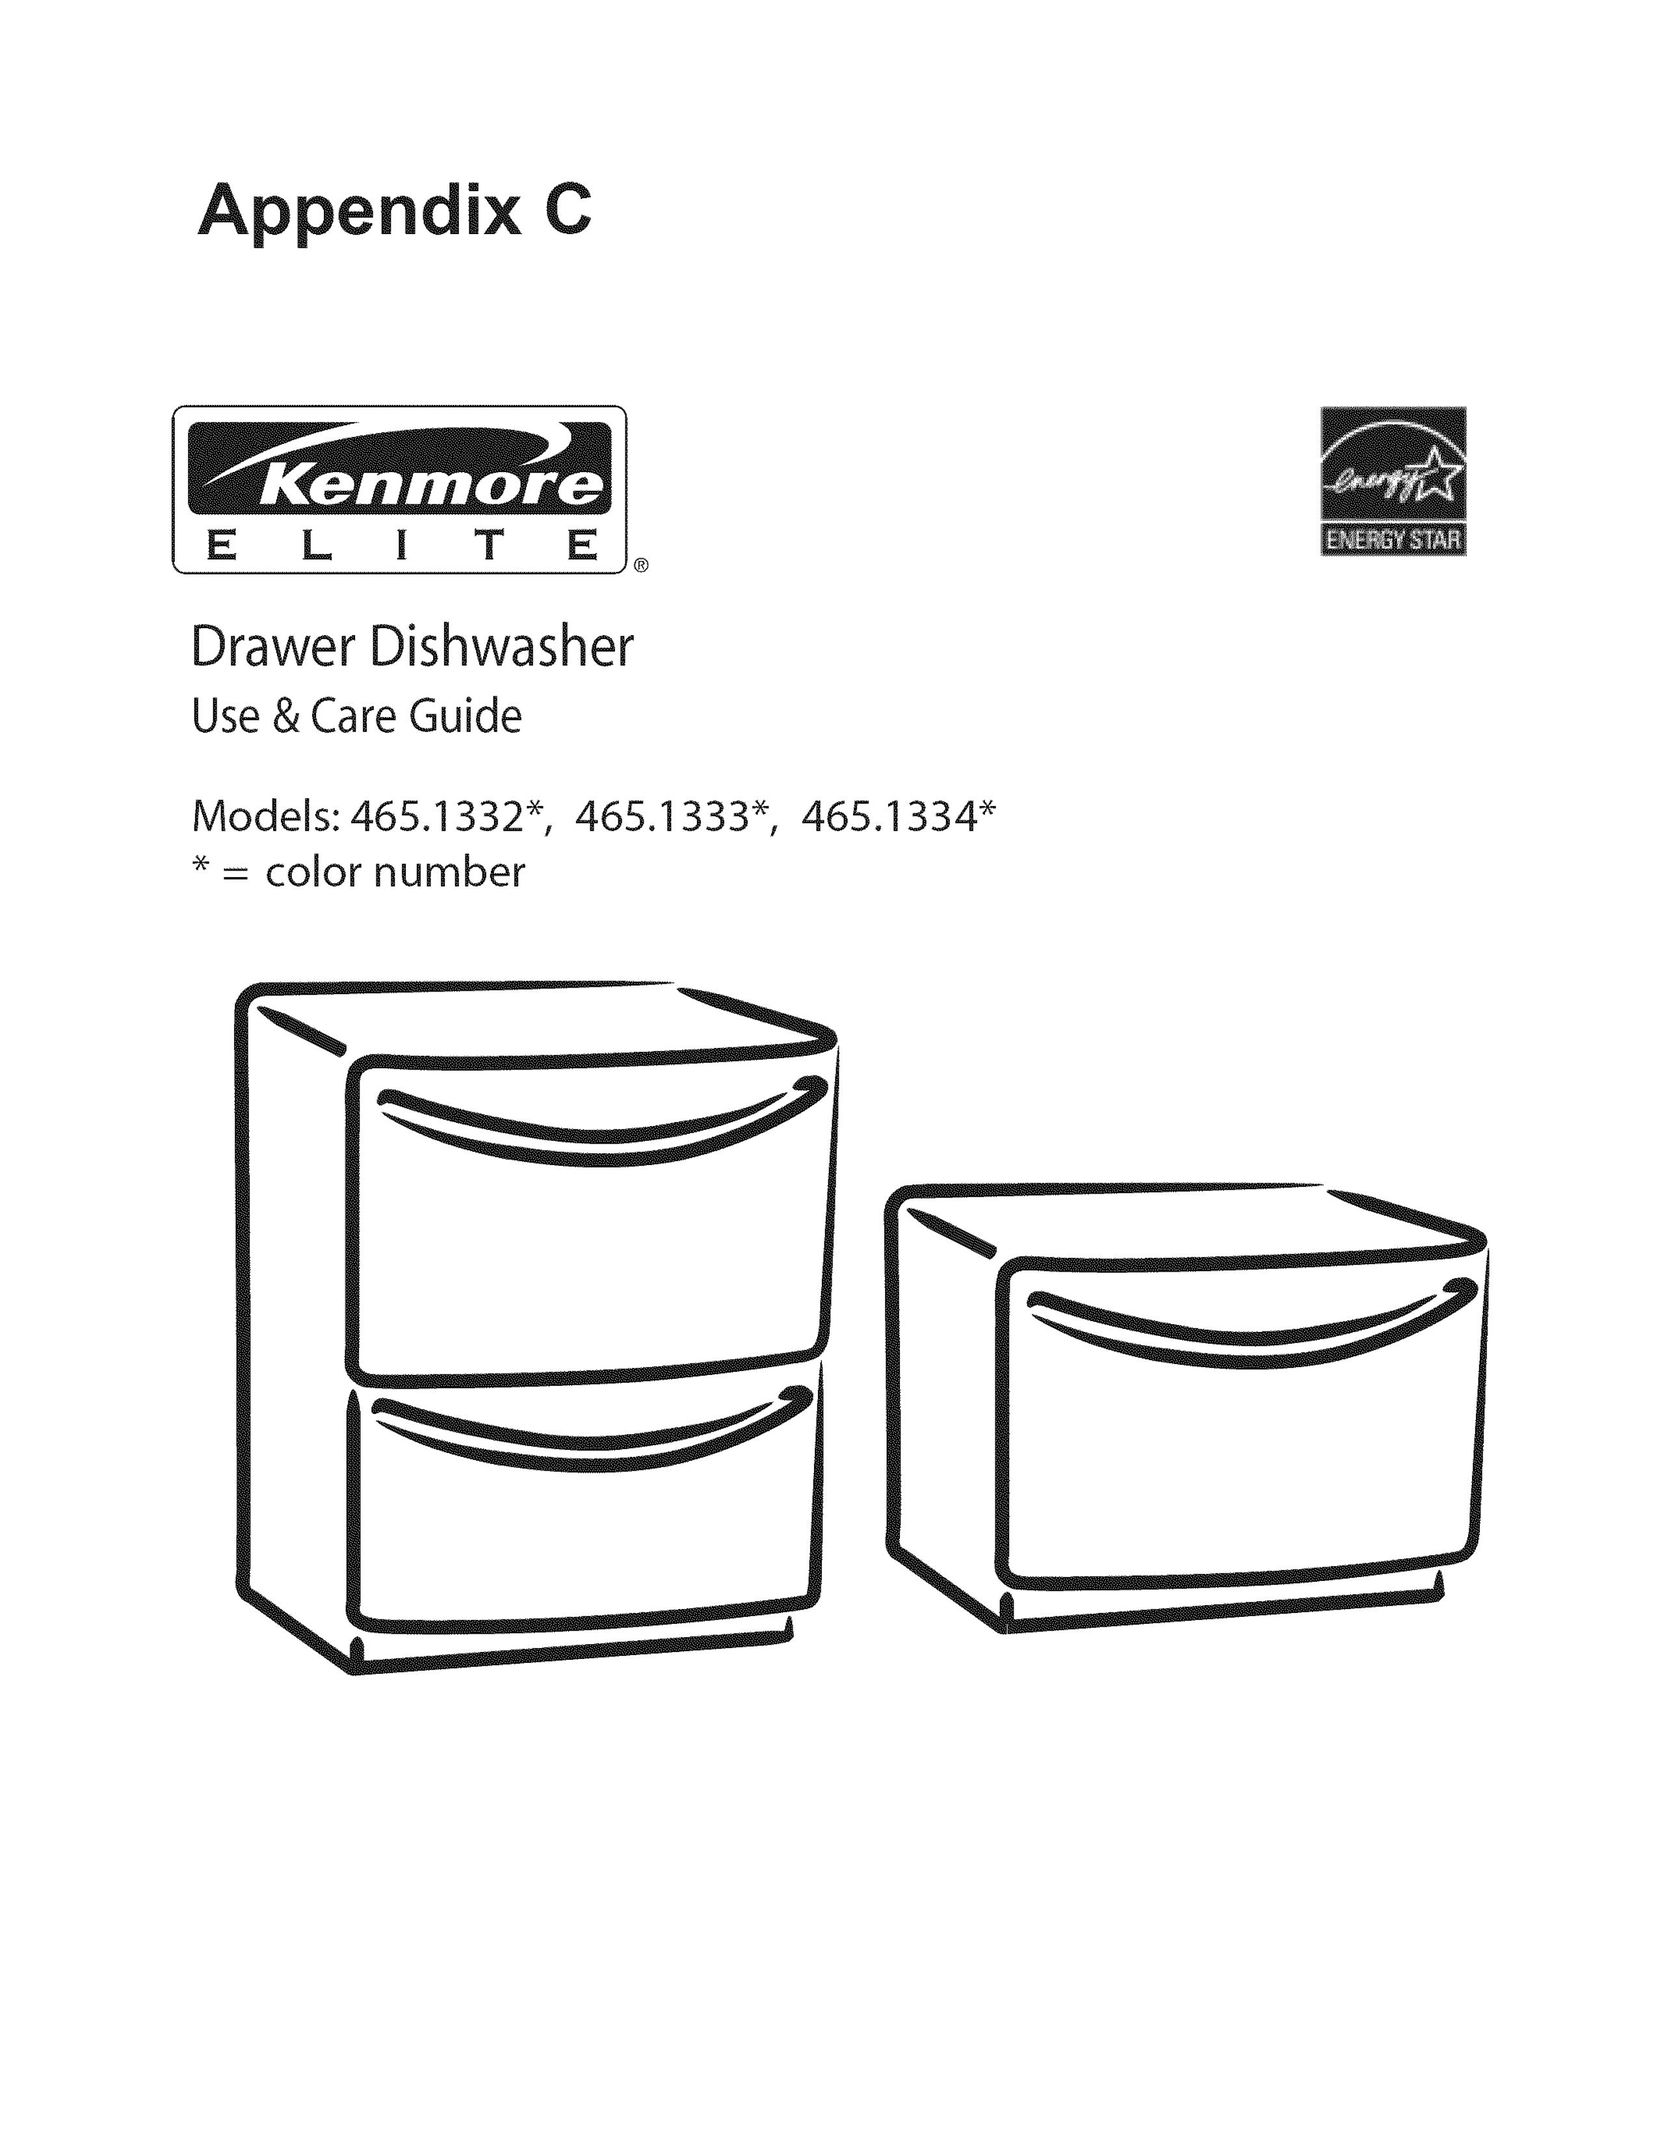 Kenmore 465.1334 Dishwasher User Manual